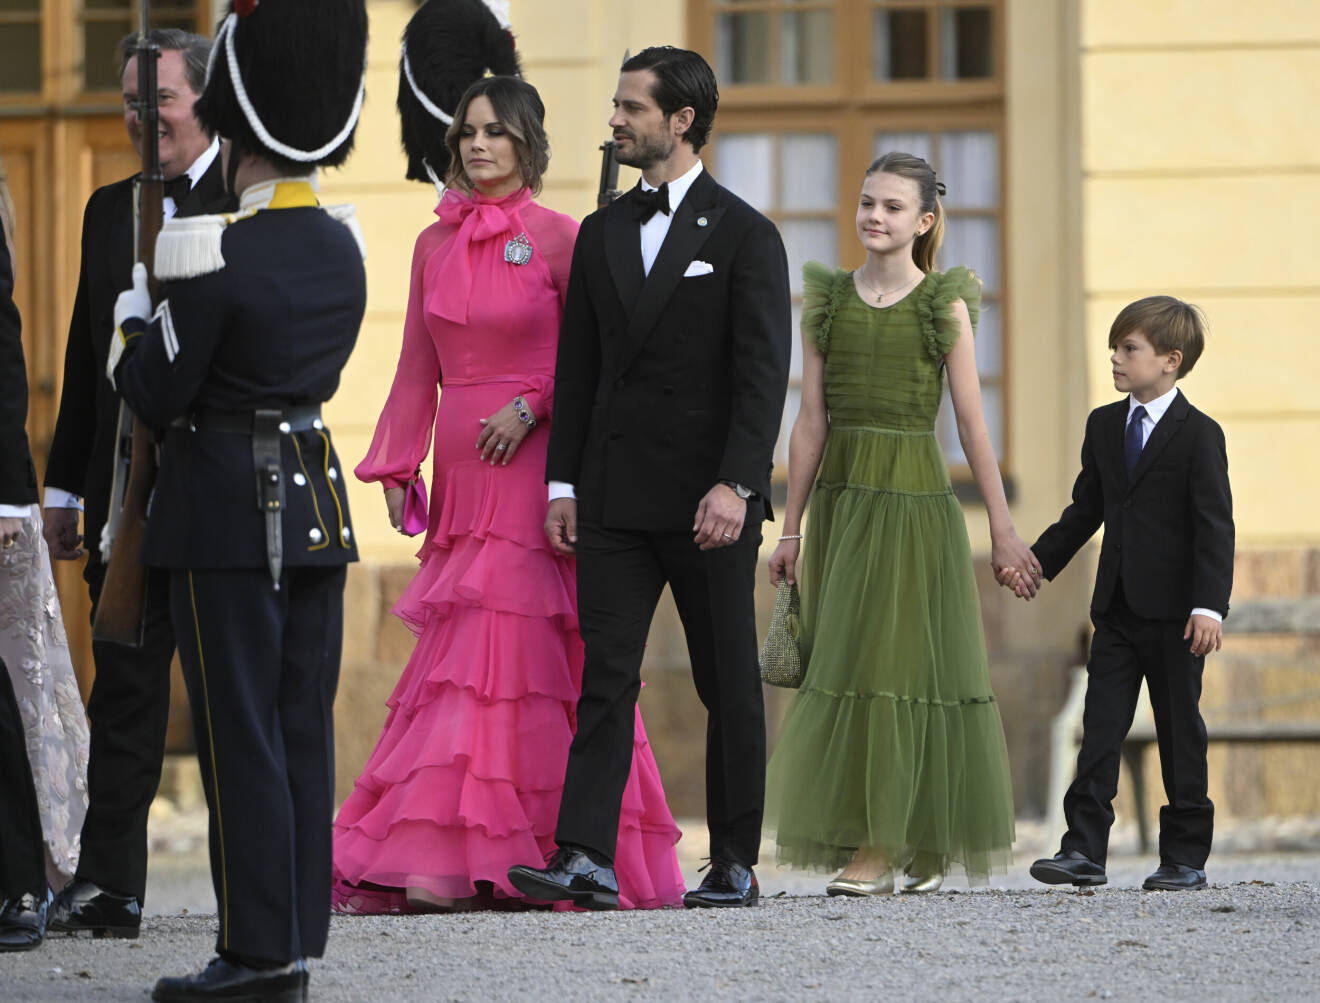 Prinsessan Sofia, prins Carl Philip, prinsessan Estelle och prins Oscar anländer till jubileumsföreställning på Drottningholms slottsteater med anledning av kungens 50-årsjubileum.